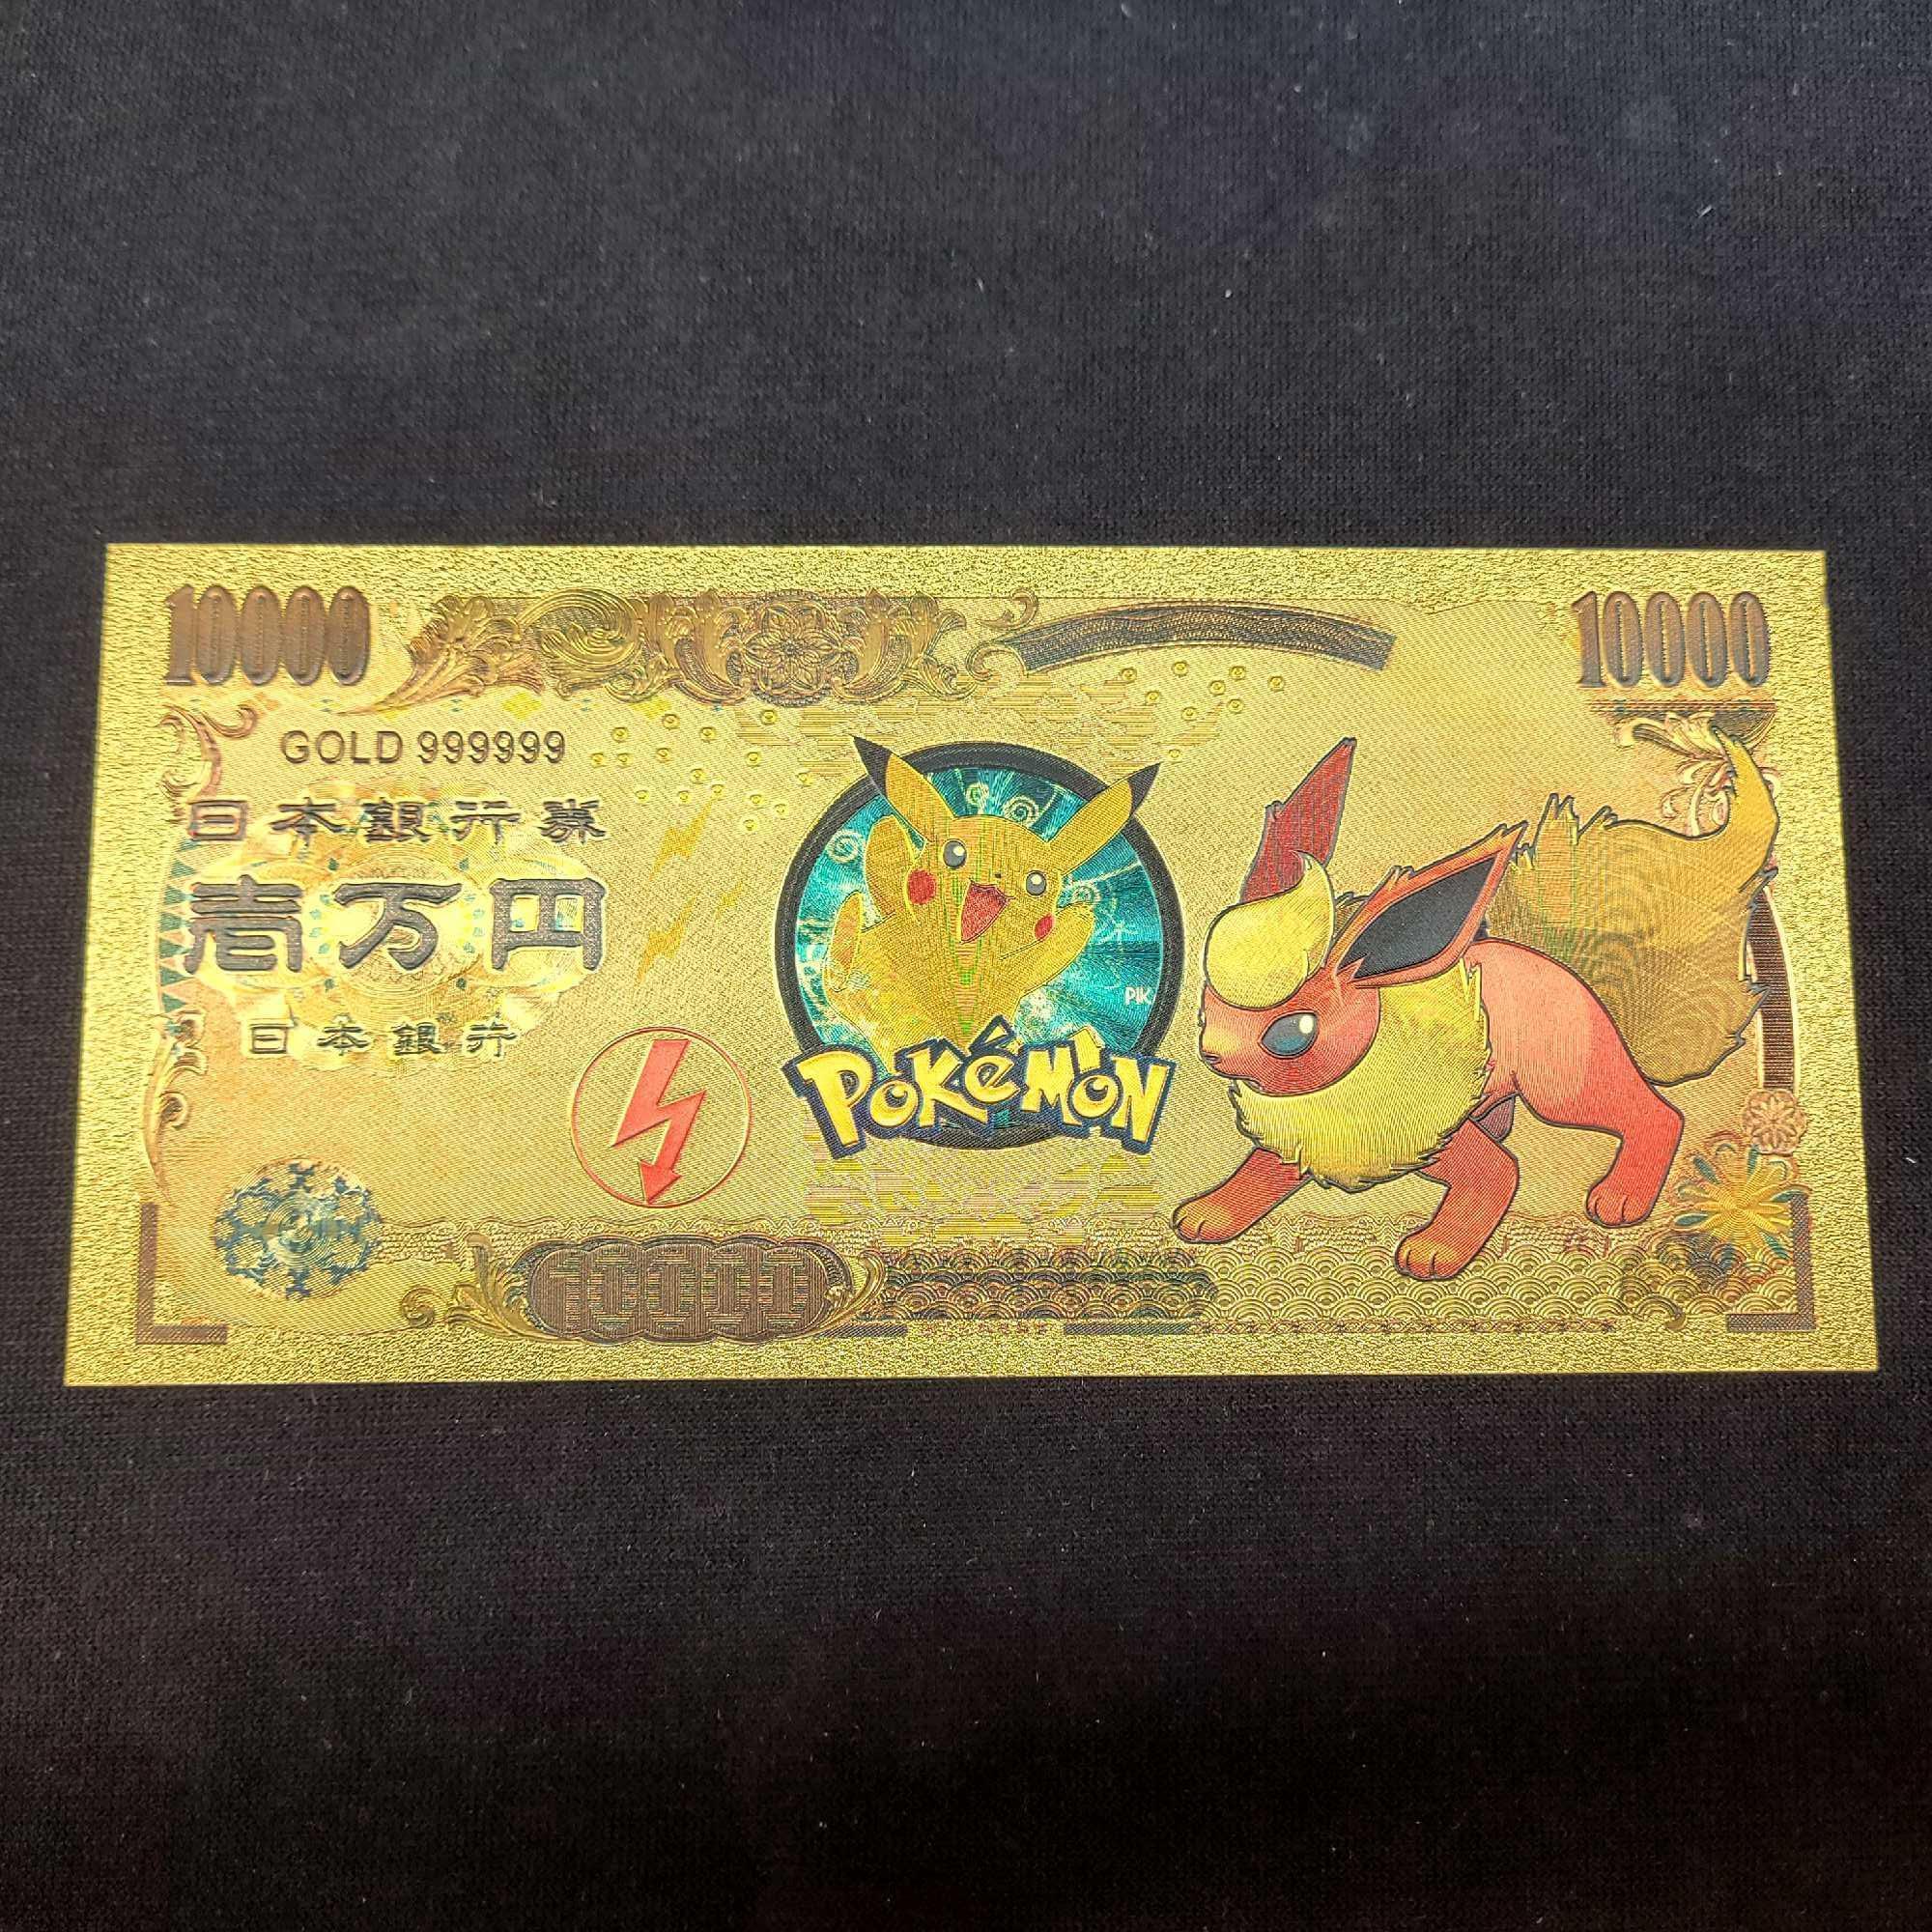 24kt Gold Plated Pokemon 10k Bills. Vaporeon, Jolteon and Flareon